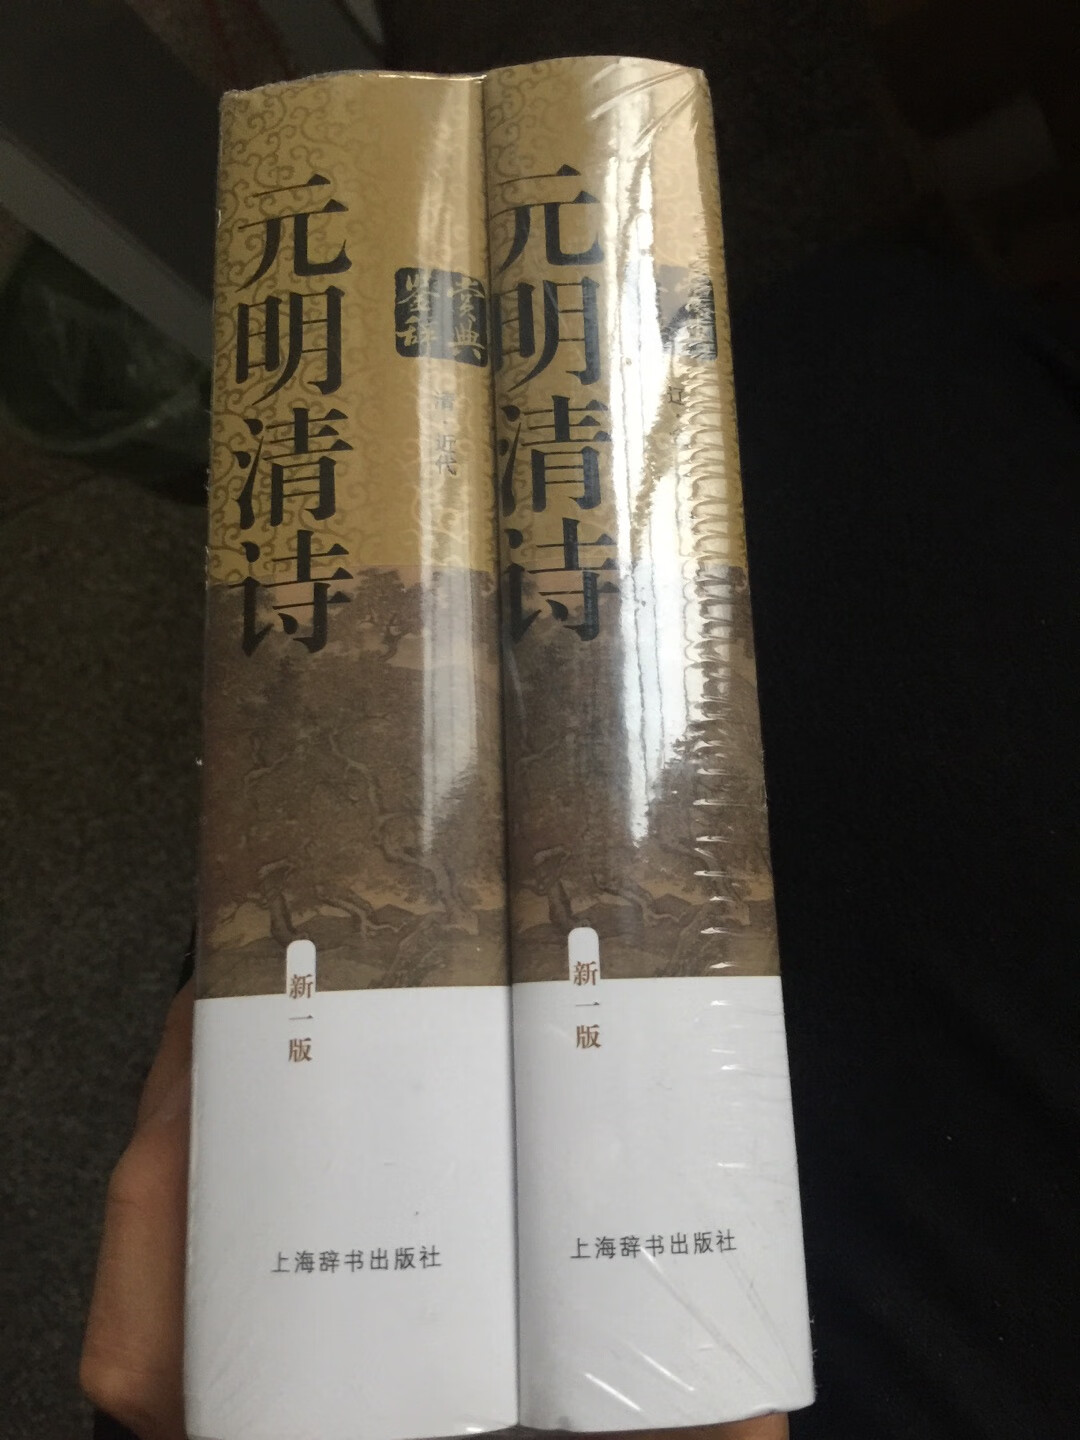 上海辞书出版社出版的鉴赏词典系列 因为是旧版翻新 有部分选择标准落伍的弊端 但是大部分都是经得起检验的名篇 作者也多是名家 不可多得